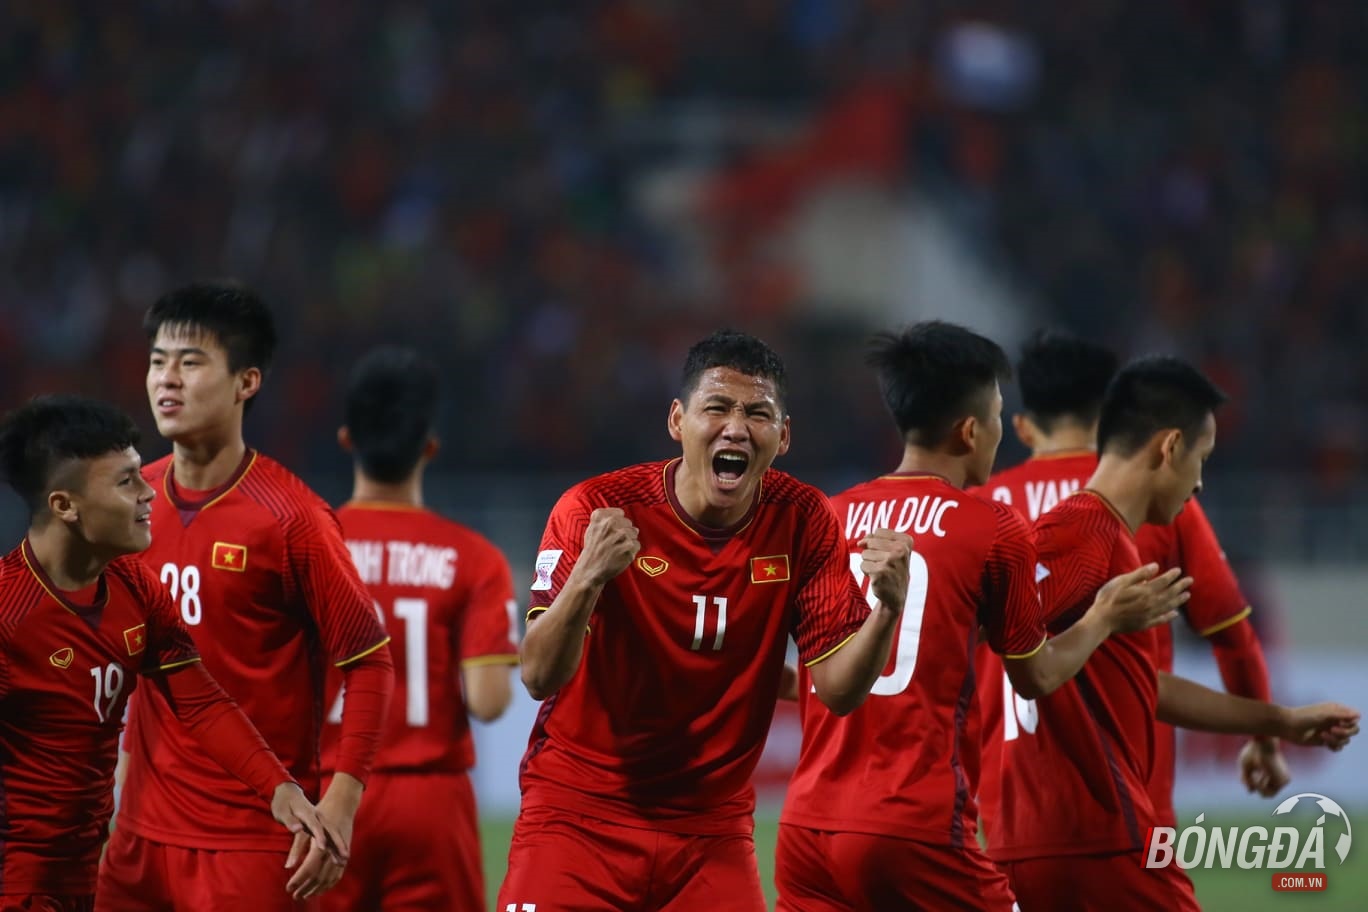 TRỰC TIẾP: ĐT Việt Nam 1-0 ĐT Malaysia: Anh Đức volley ghi bàn - Bóng Đá